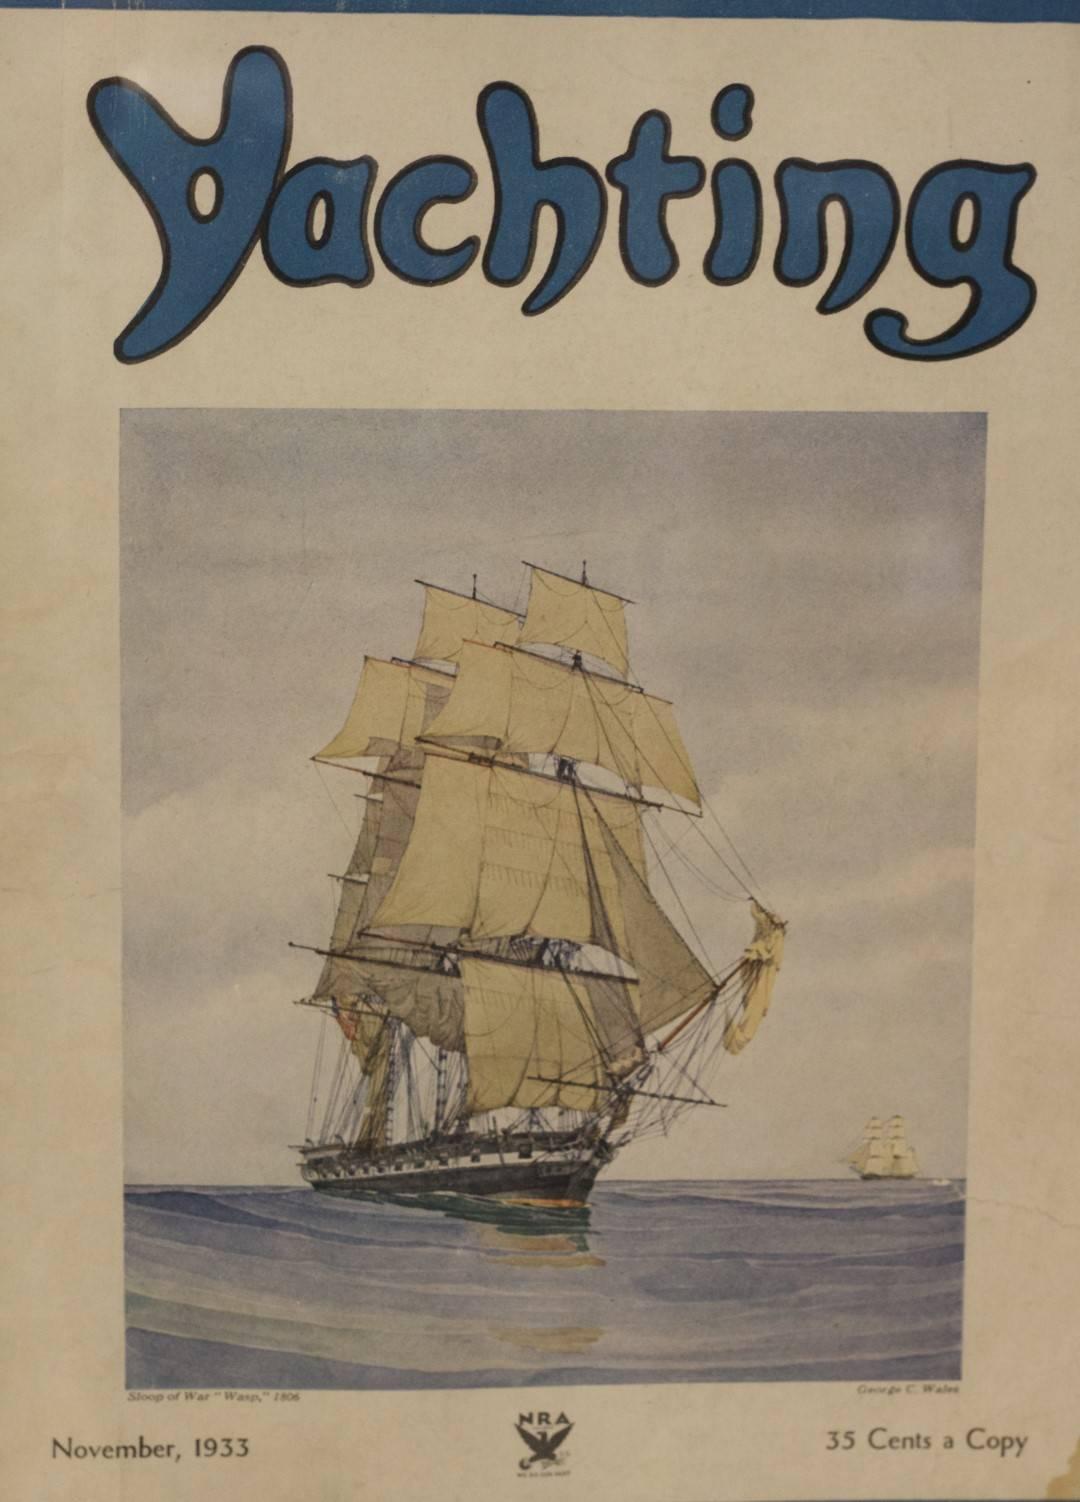 Authentisches Cover des Yachting Magazine, Ausgabe November 1933. Zeigt eine Kriegsschaluppe von 1806, nach einem Gemälde von George C. Wales. Mattiert und gerahmt. Abmessungen: 17.5